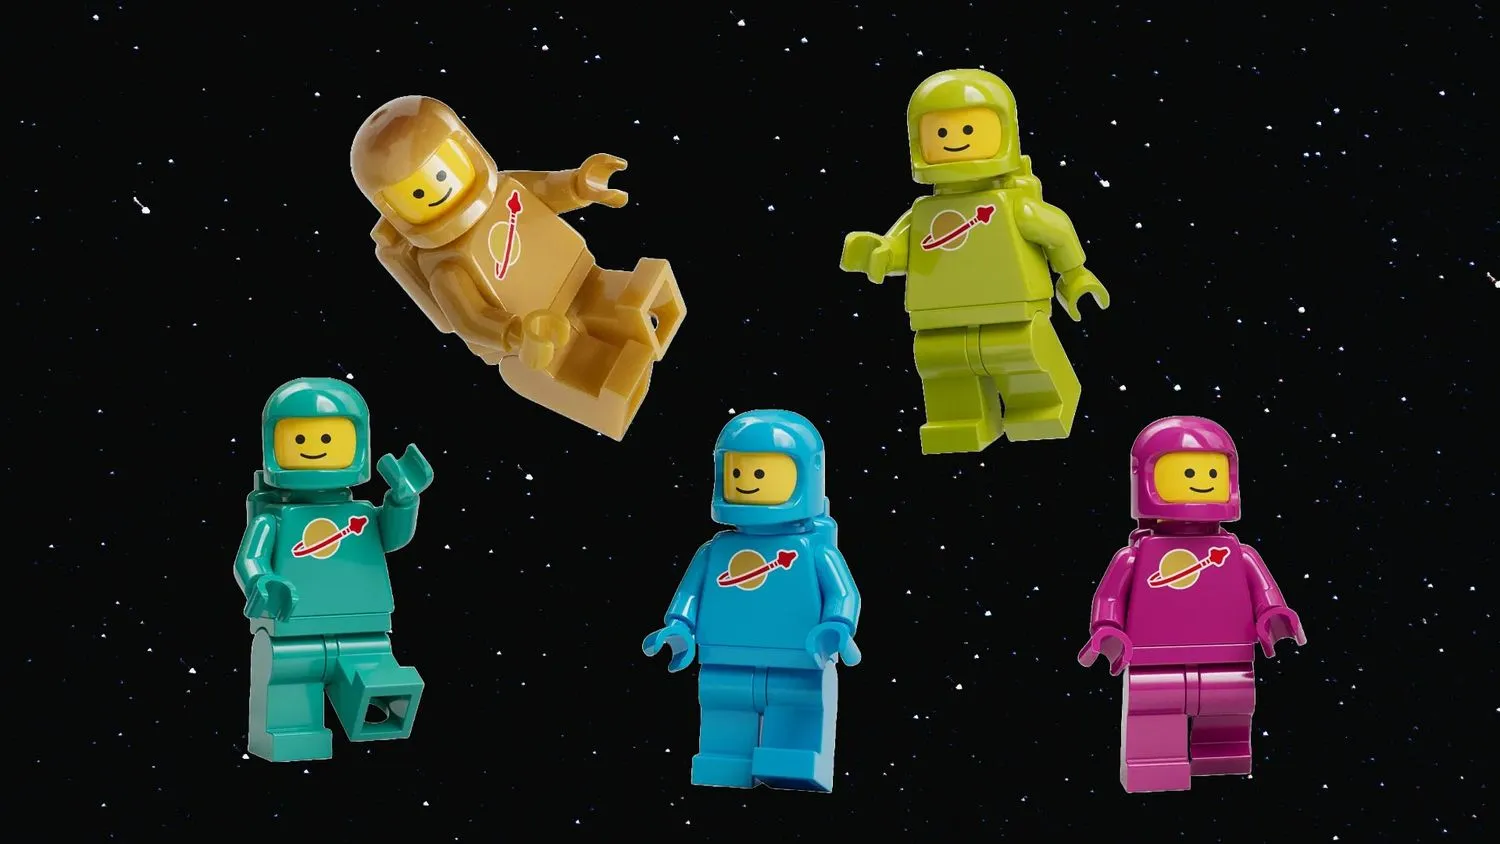 Mehr über den Artikel erfahren Wähle den Lego Spaceman, den du im neuen Lego Ideas Set sehen möchtest